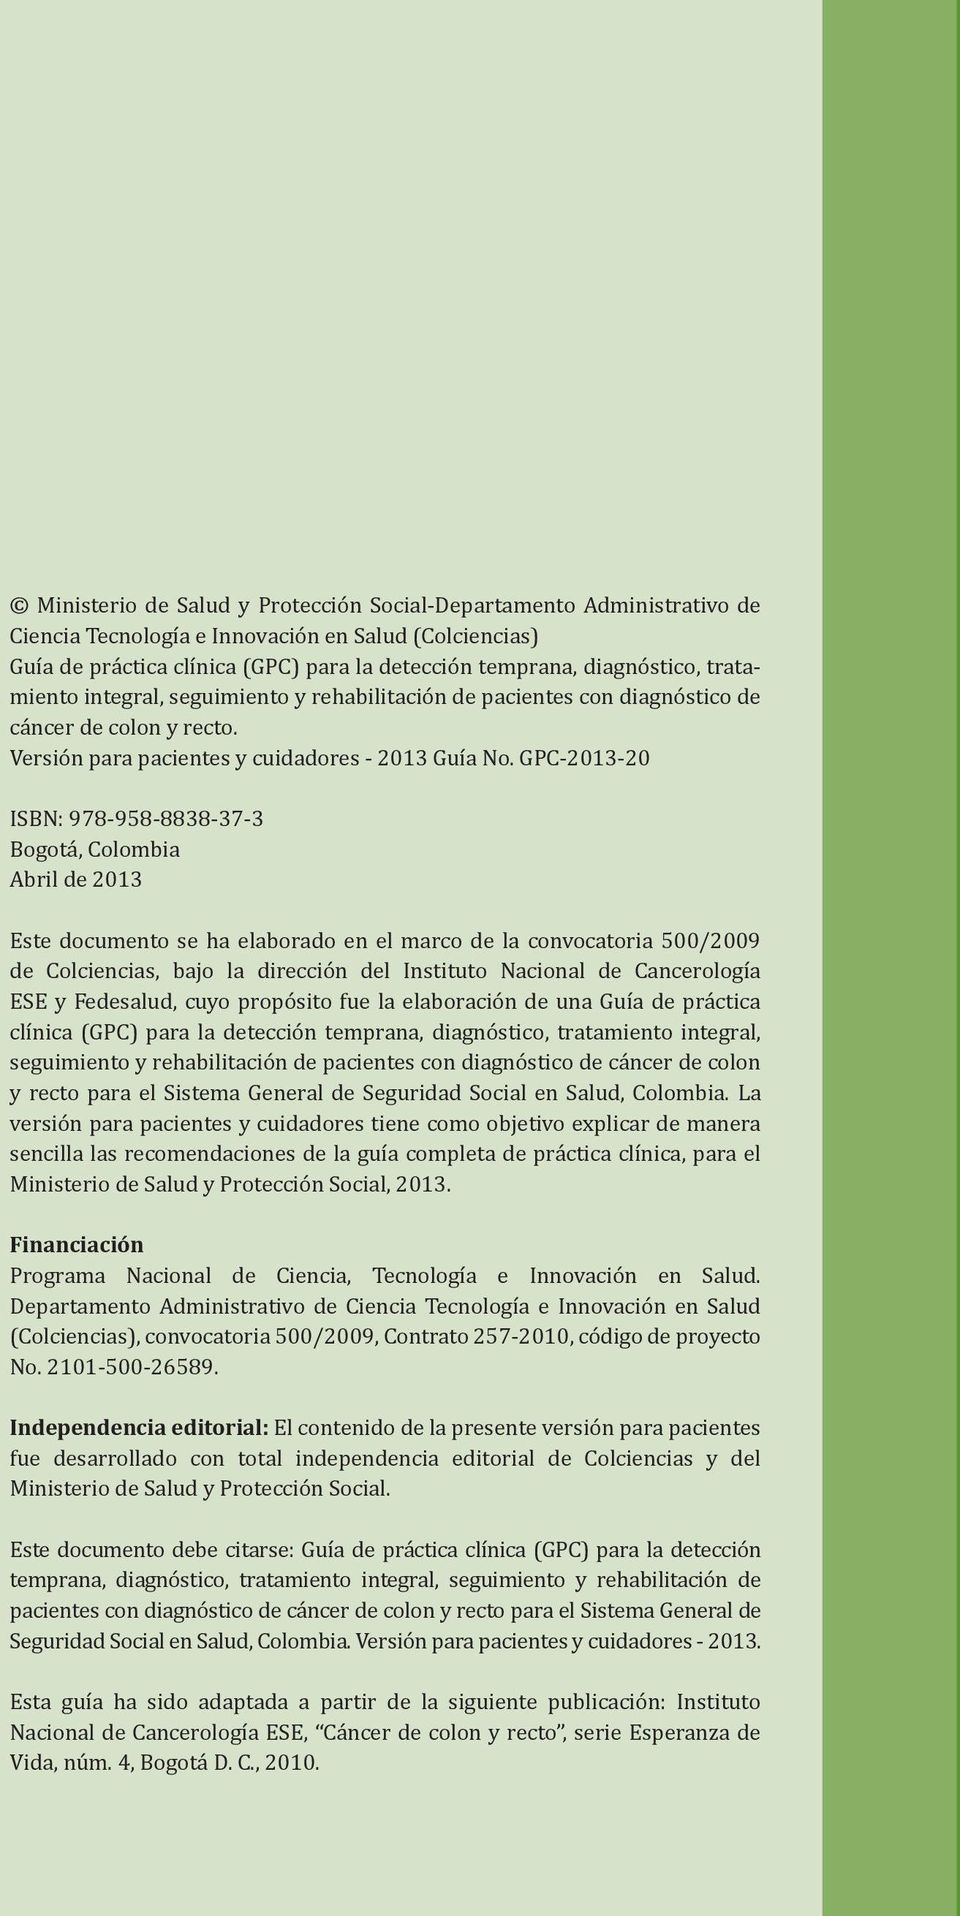 GPC-2013-20 ISBN: 978-958-8838-37-3 Bogotá, Colombia Abril de 2013 Este documento se ha elaborado en el marco de la convocatoria 500/2009 de Colciencias, bajo la dirección del Instituto Nacional de